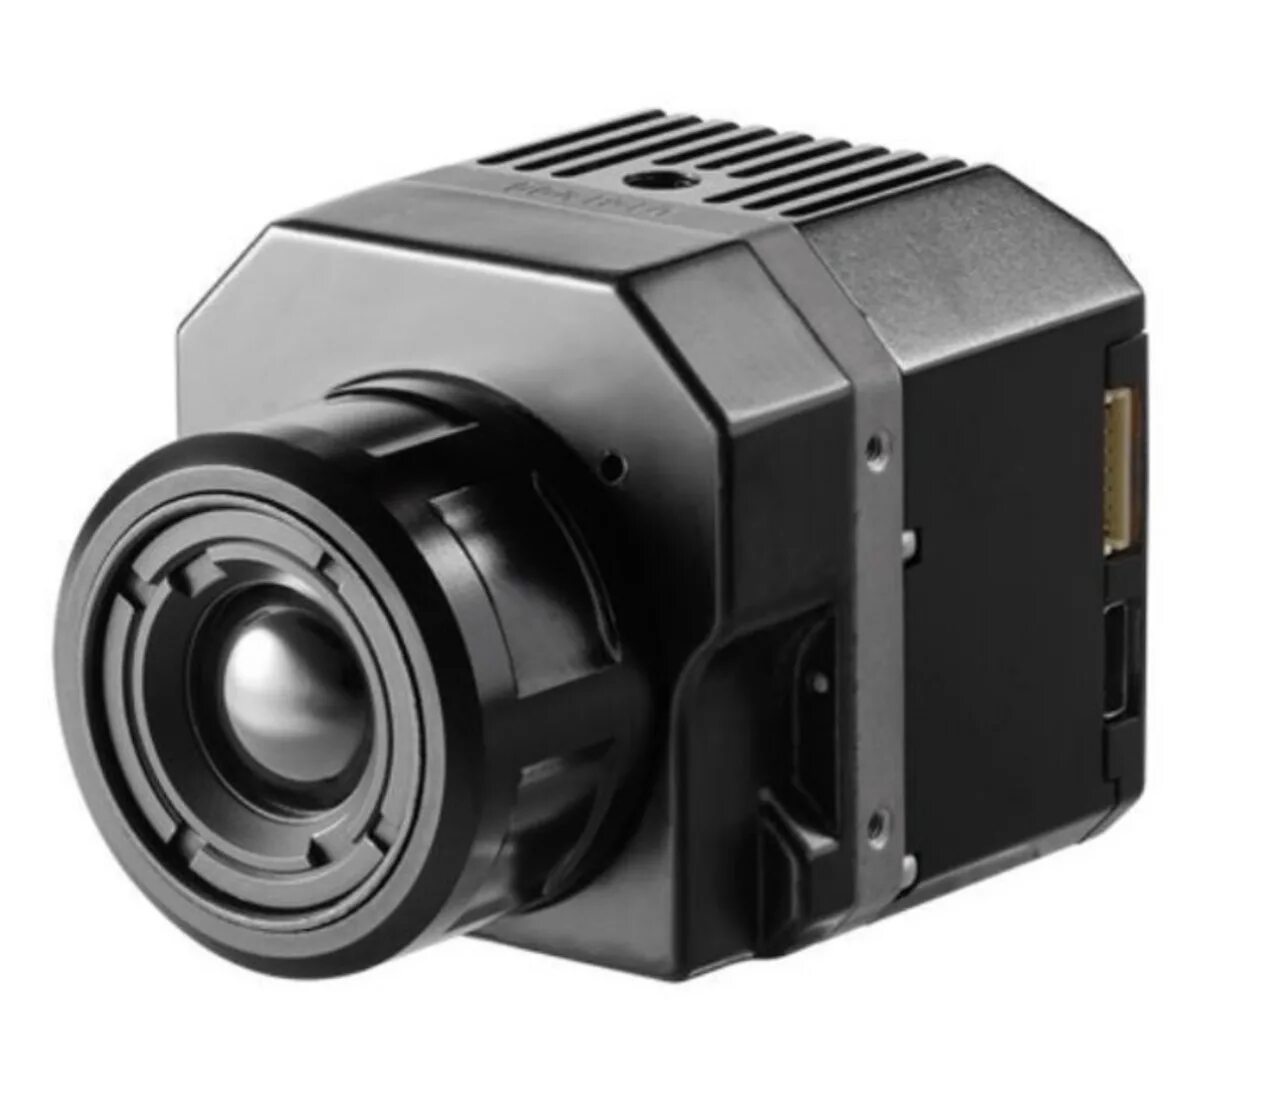 Инфракрасная камера тепловизор. FLIR vue Pro r 640. FLIR vue Pro r 640 30 Гц. FLIR tau тепловизионный модуль. FLIR HADRONTM 640r.